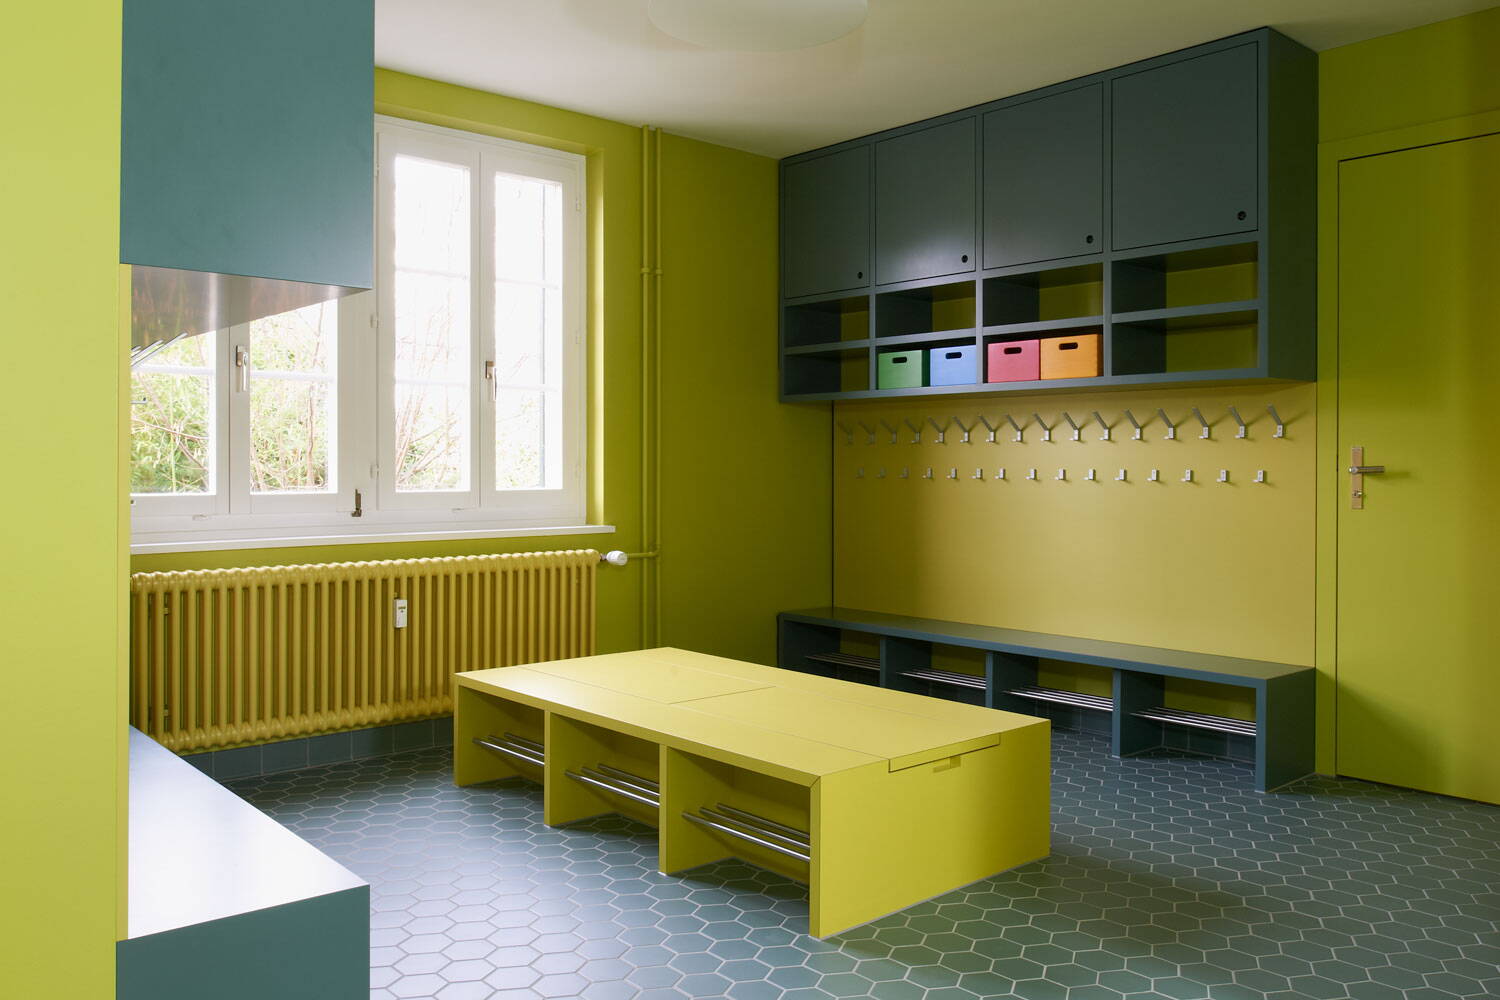 Schindelhäuser, Zürich Wipkingen, Kindergarten Garderobe mit Finkenschrank in bunten Grüntönen